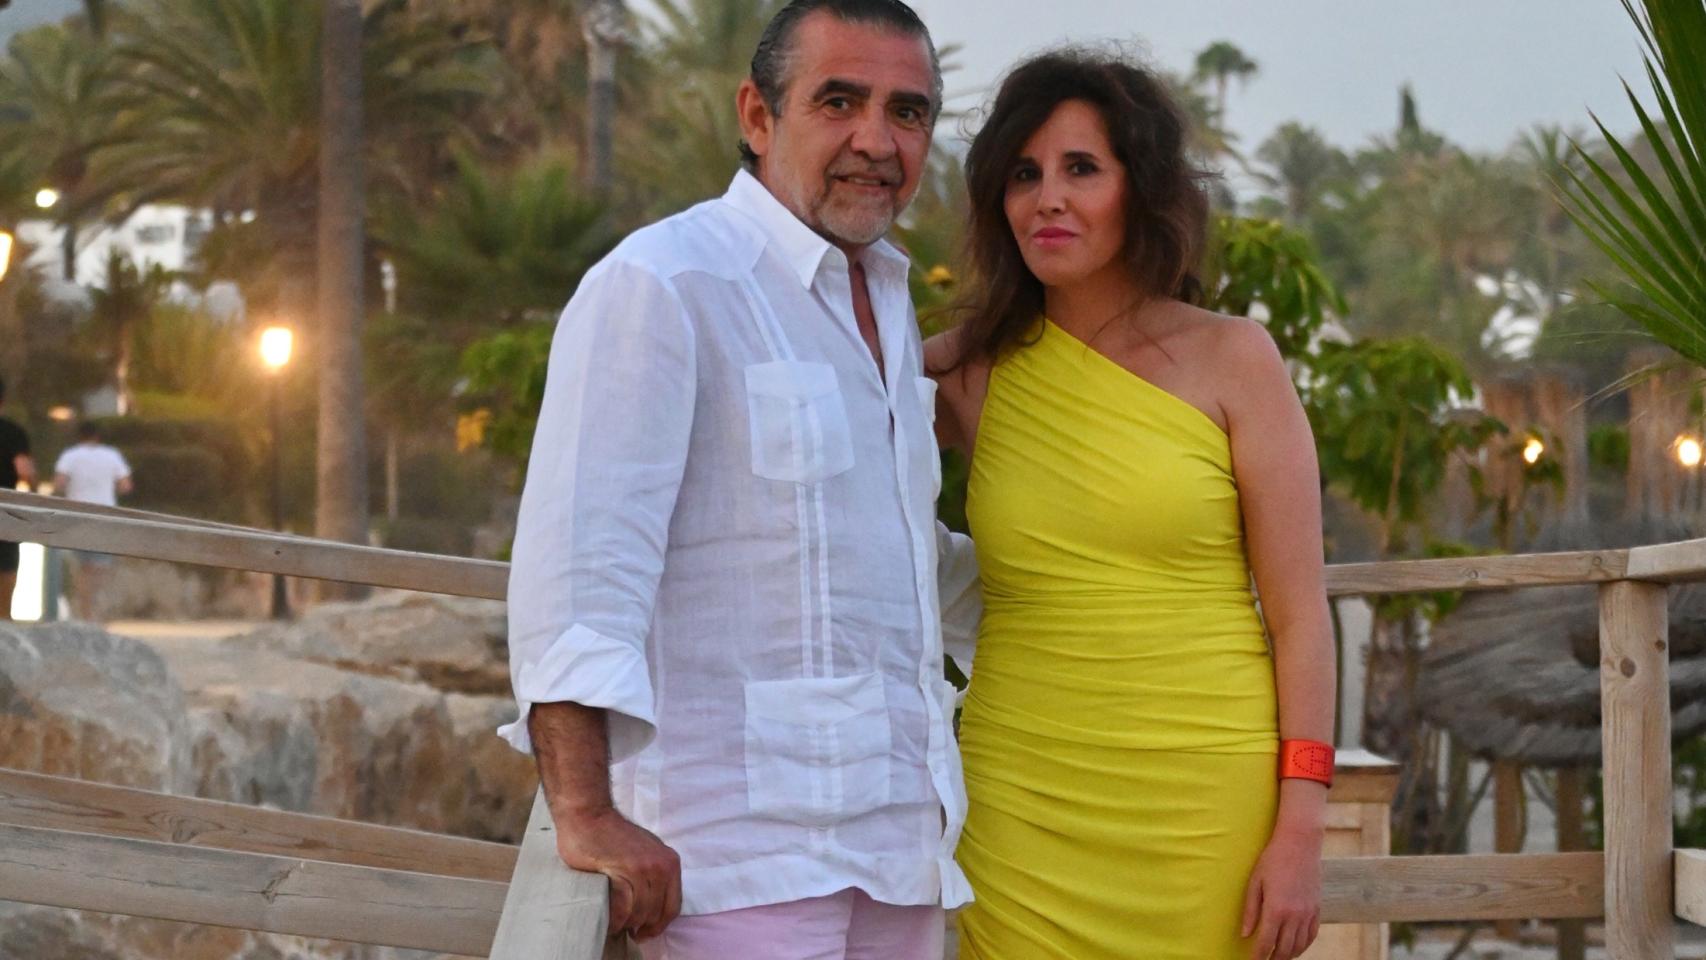 Jaime Martínez-Bordiú y su pareja Marta Fernández en una imagen reciente en Marbella.